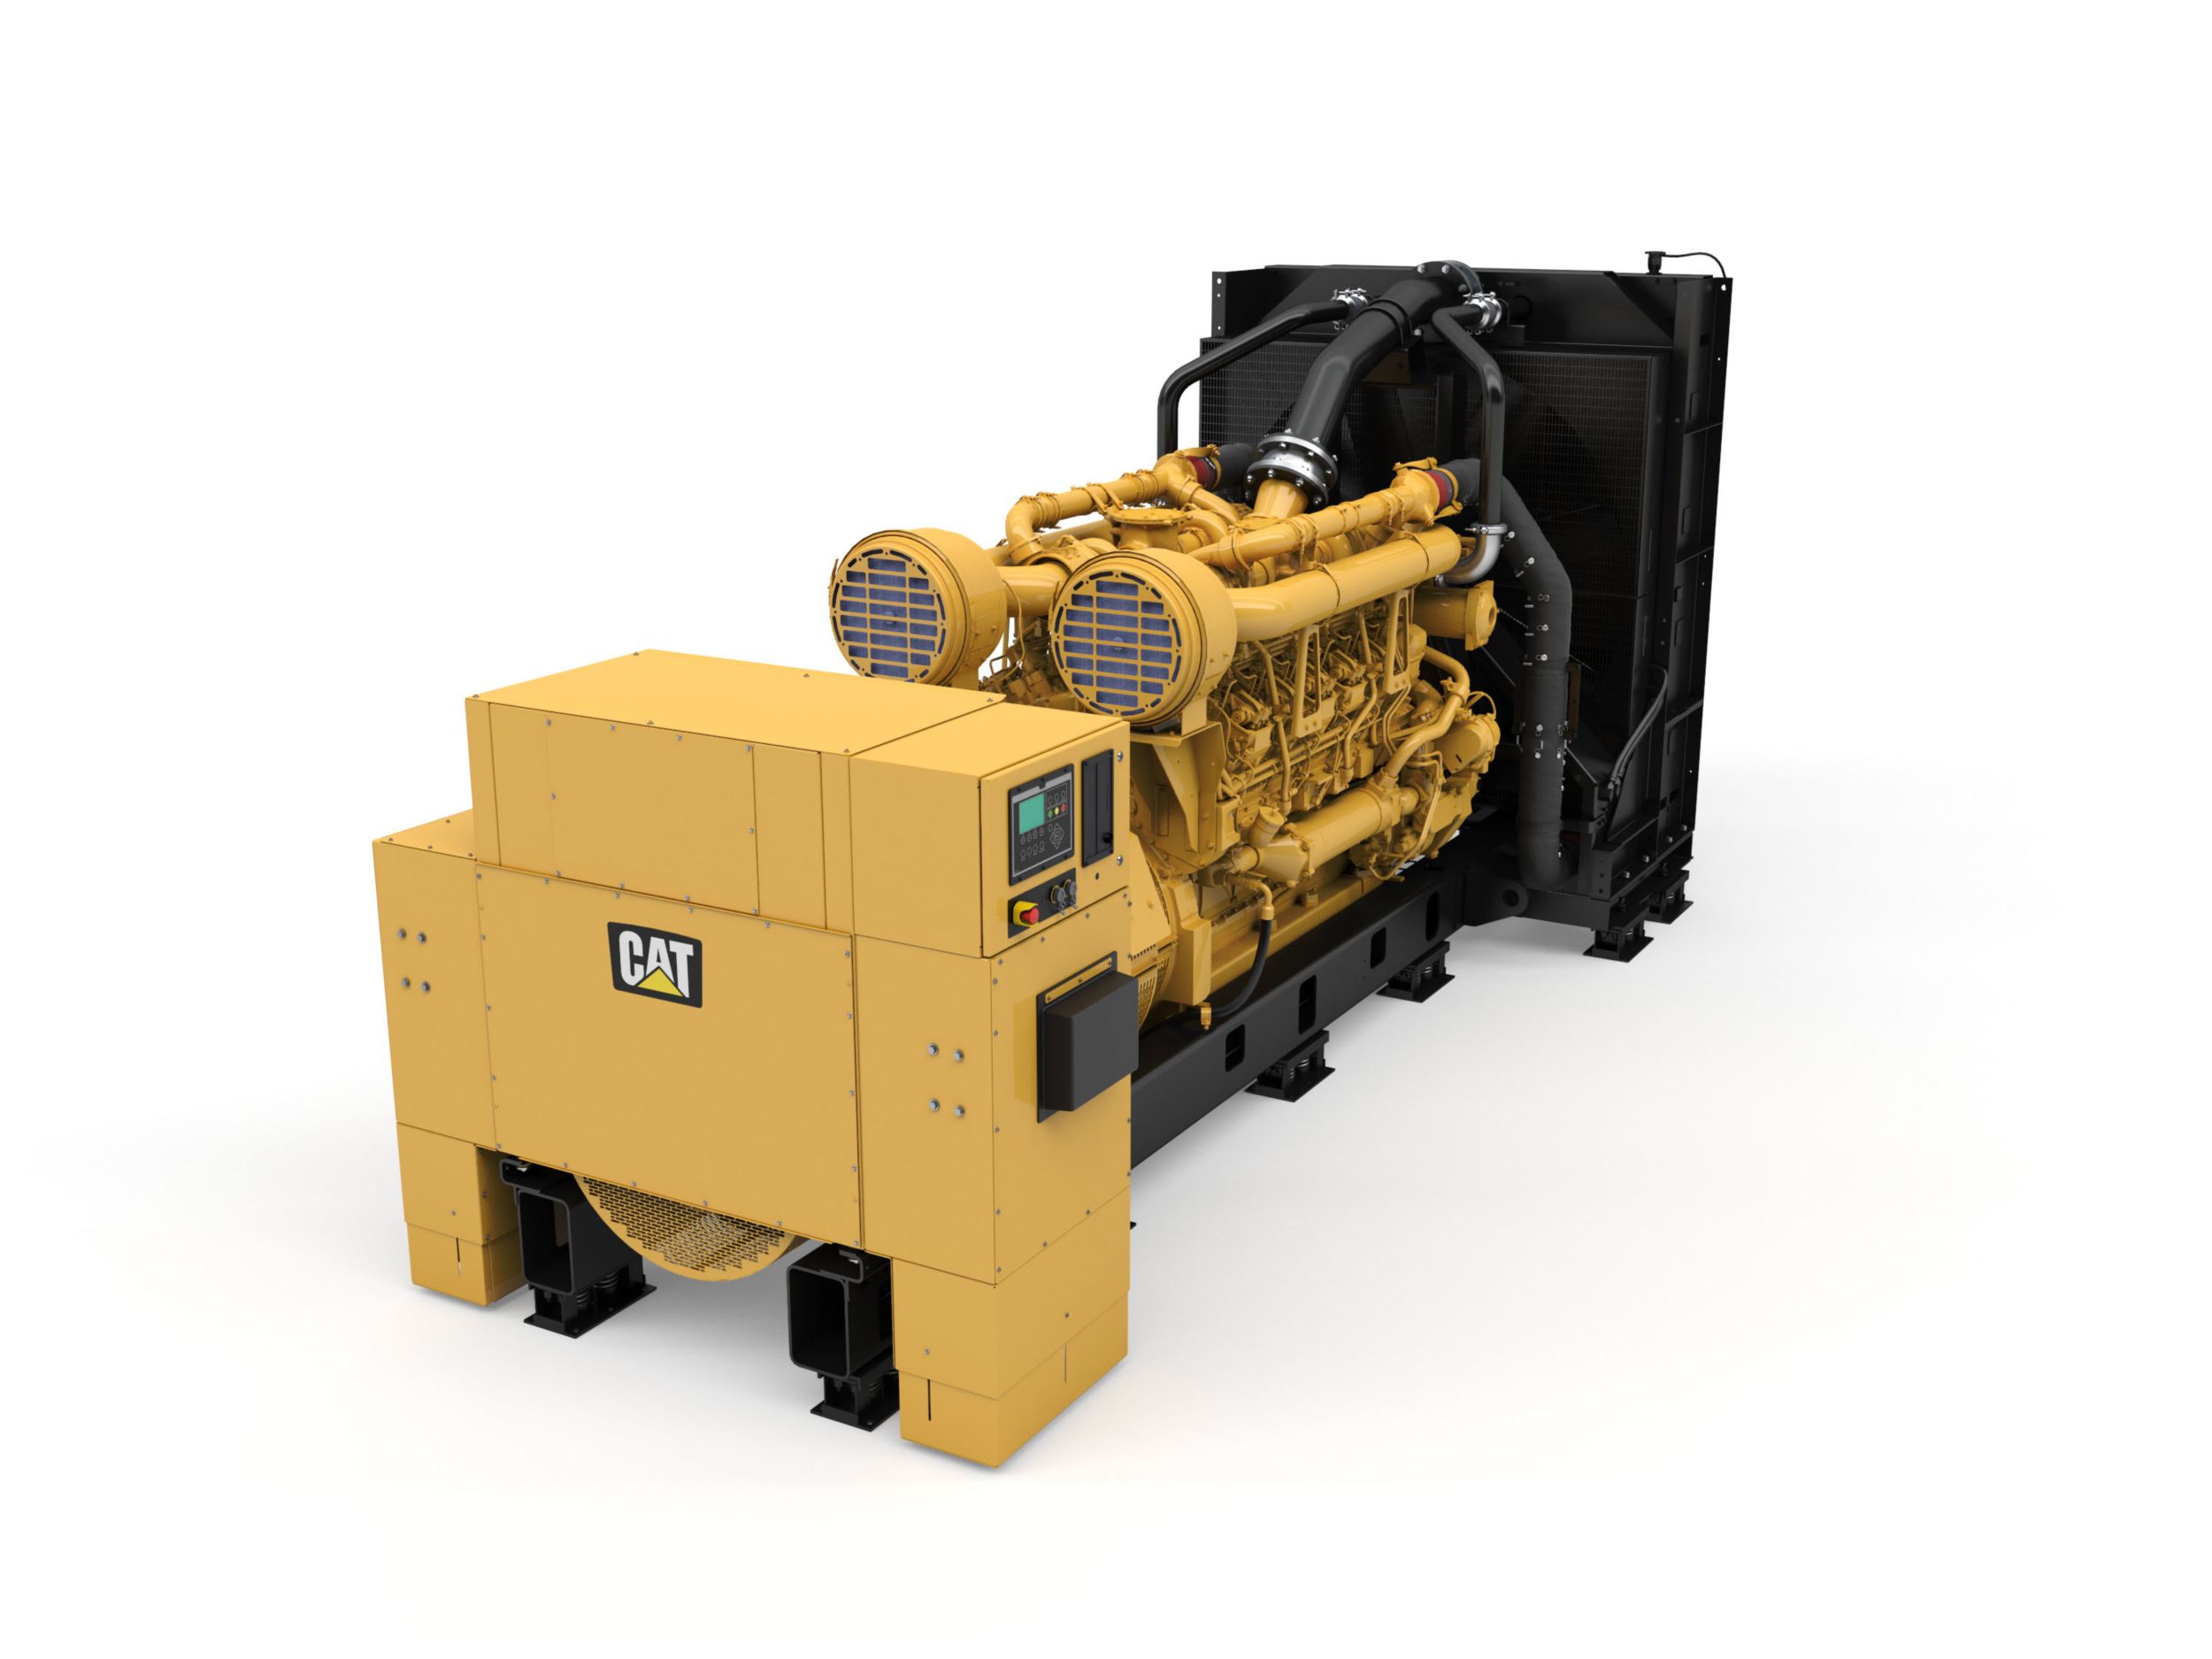 3512C Diesel Generator Set With Improved Power Density